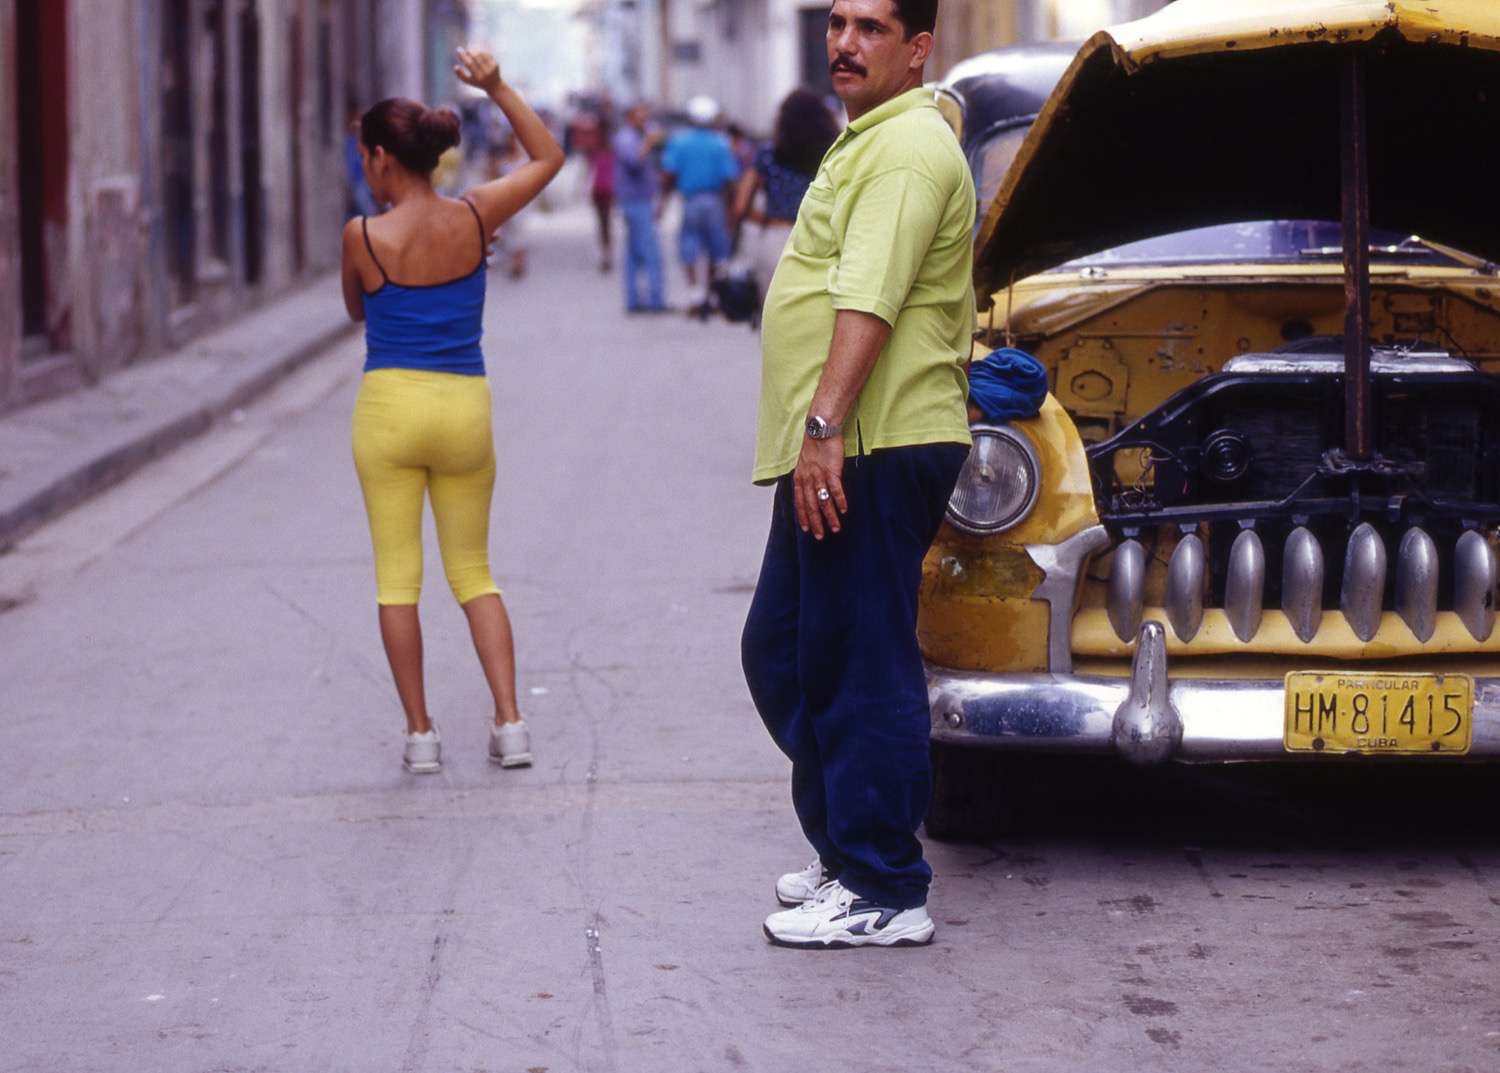 Cuba_taxi-and-girl-on-street-Cuba120.jpg